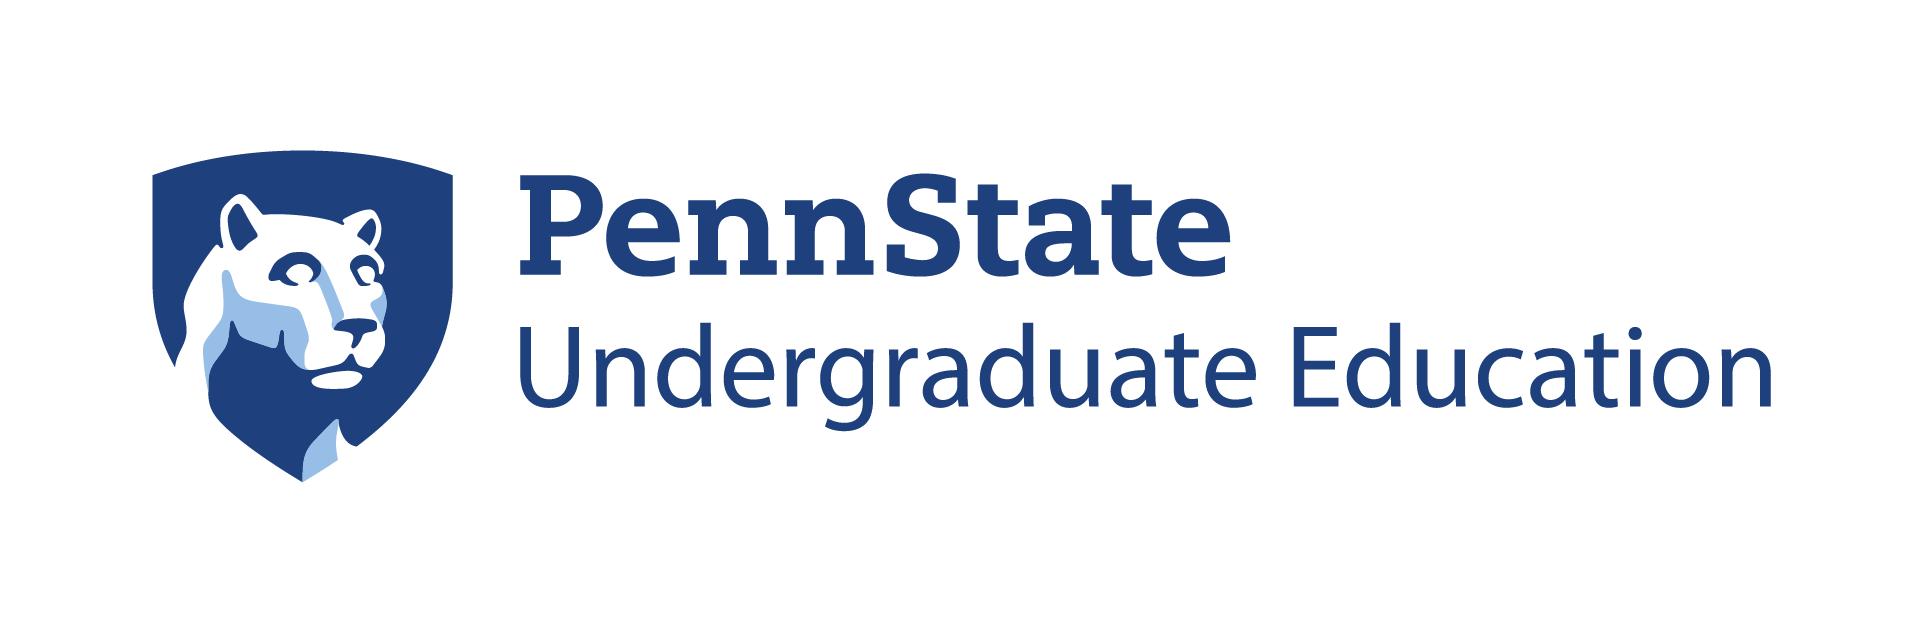 Penn State: Undergraduate Education